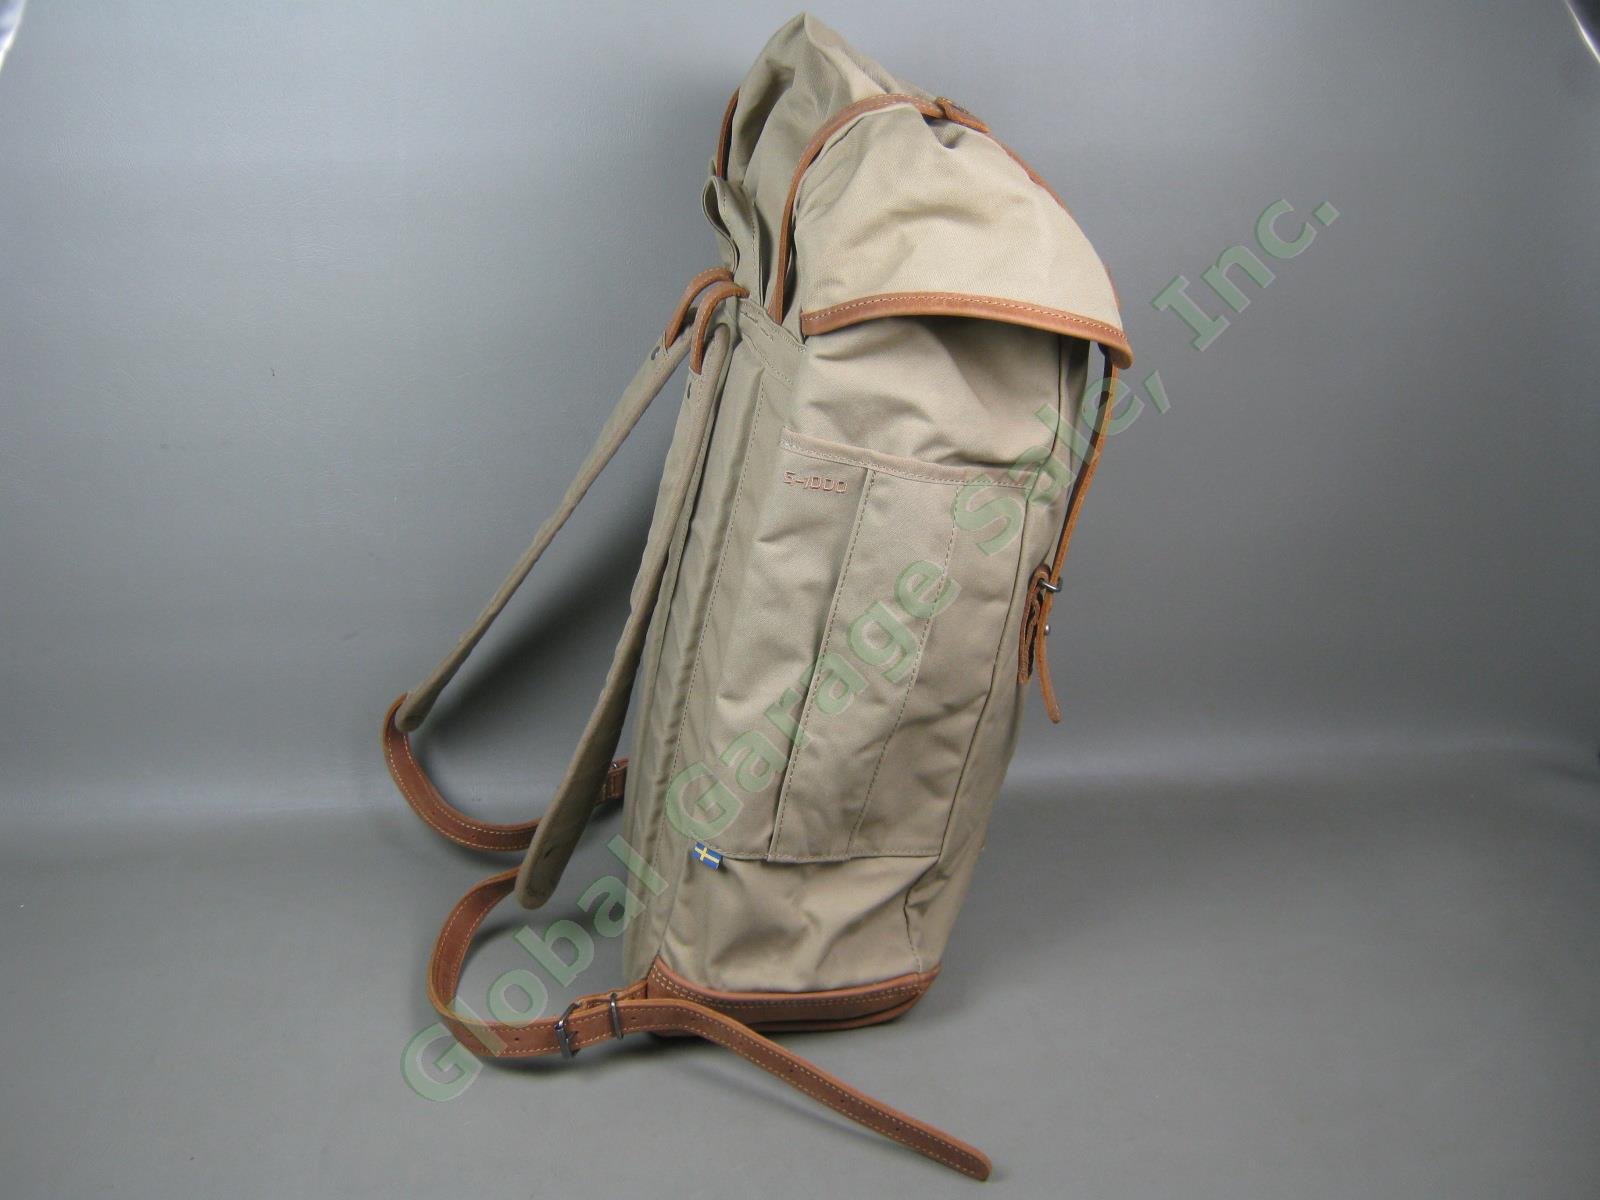 Fjallraven Rucksack No 21 Large Daypack Backpack 24206 Sand Color G-1000 VG COND 3